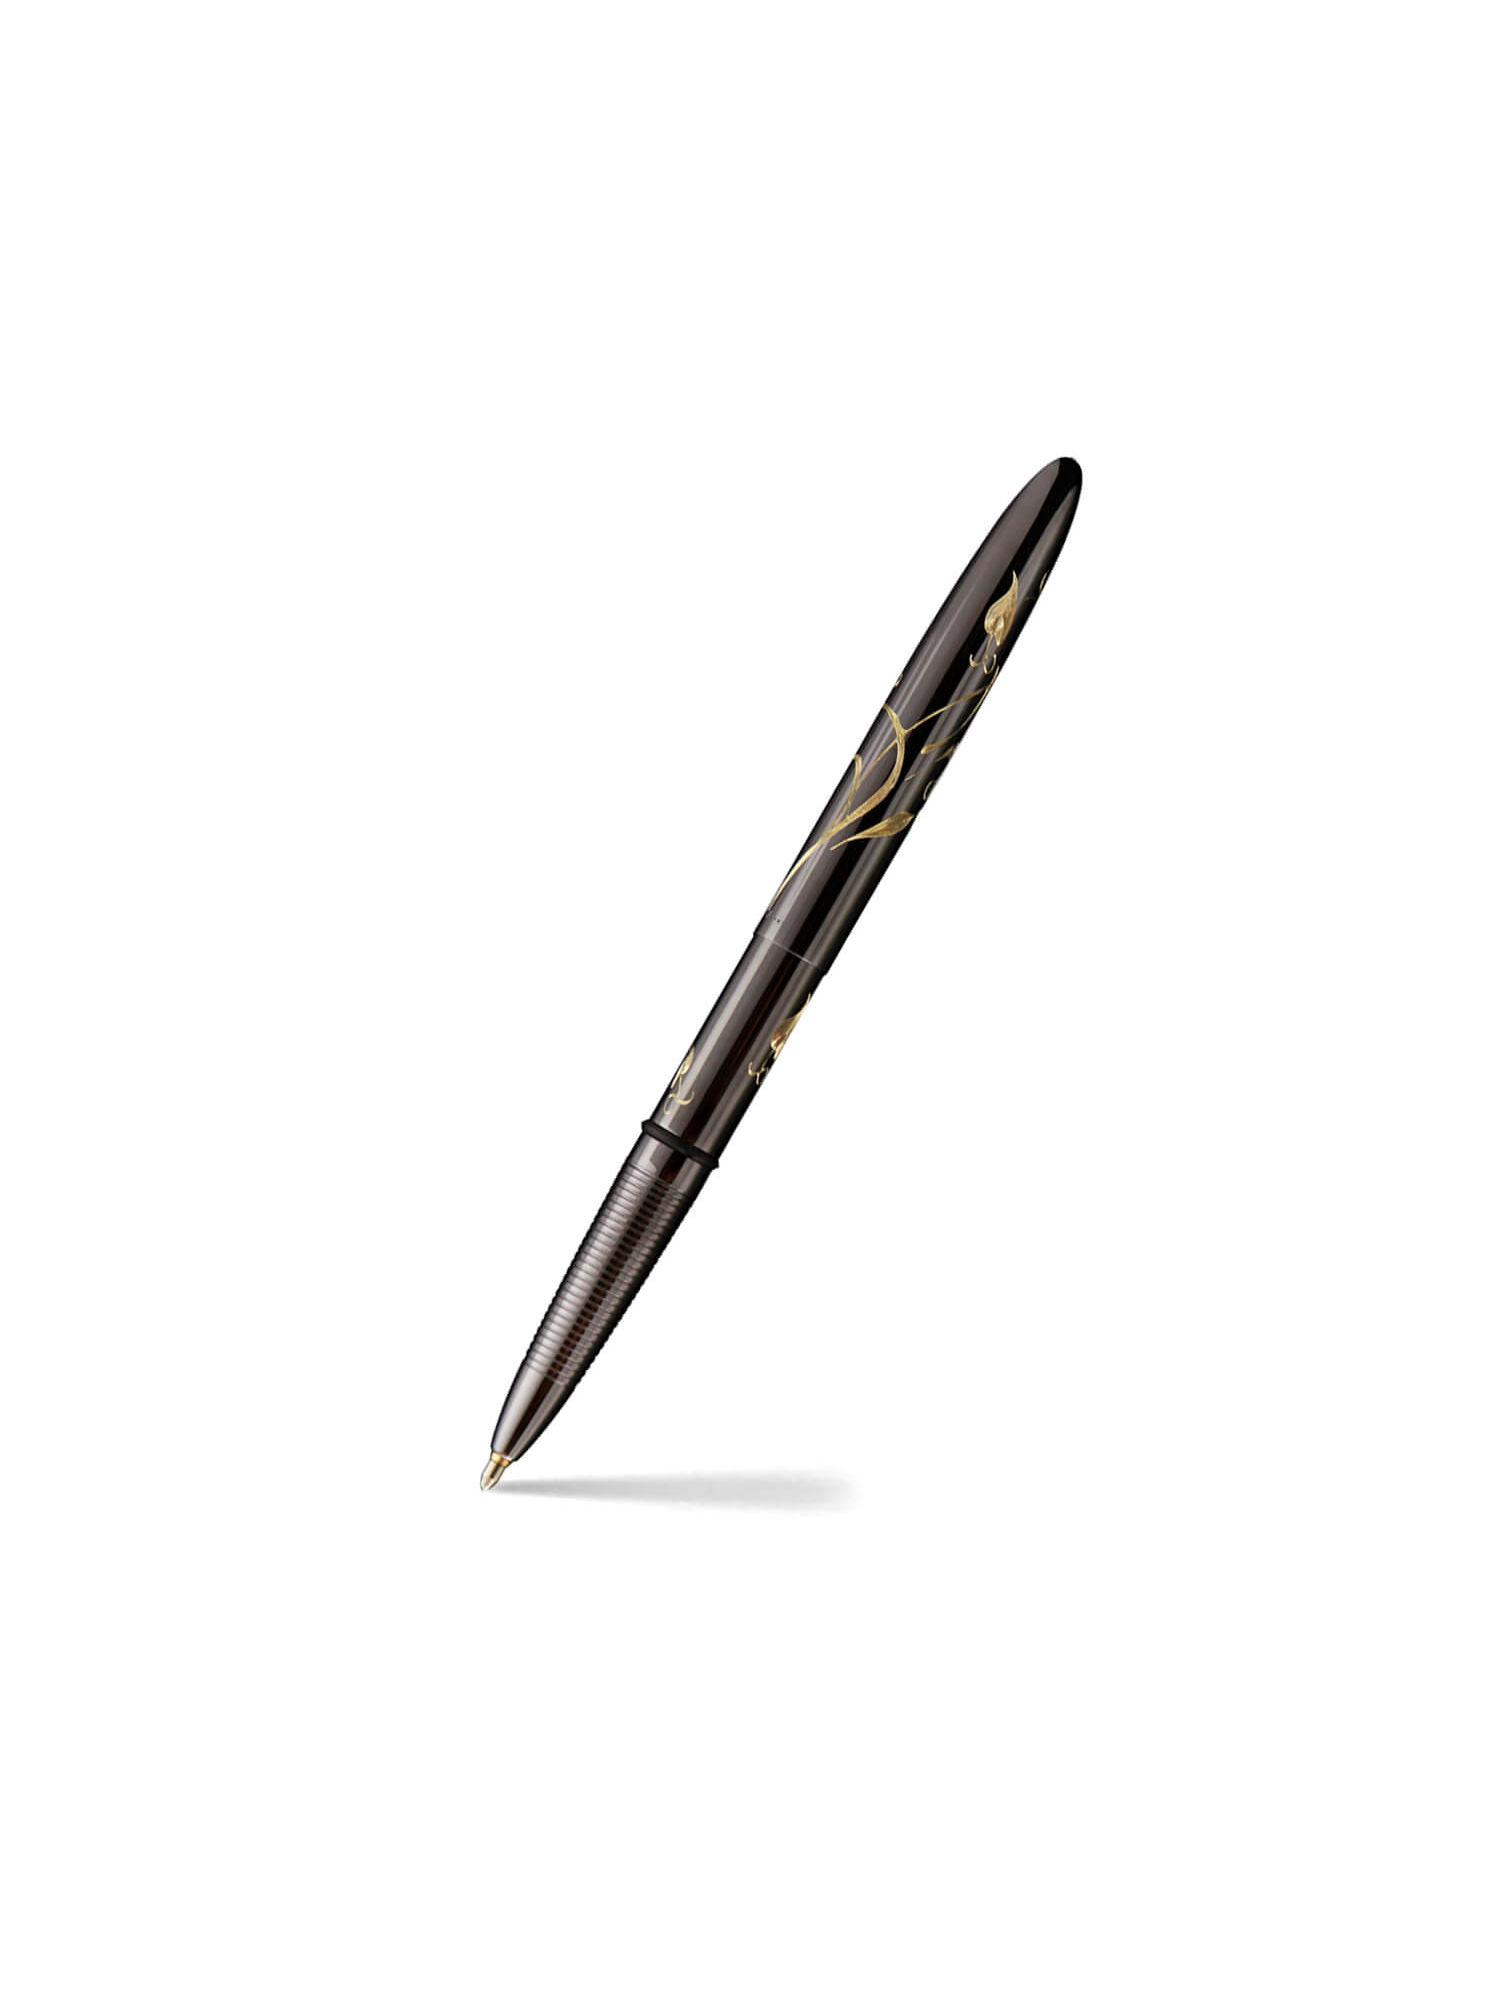 400btn-n bullet ballpoint pen with nouveau design - black titanium nitride